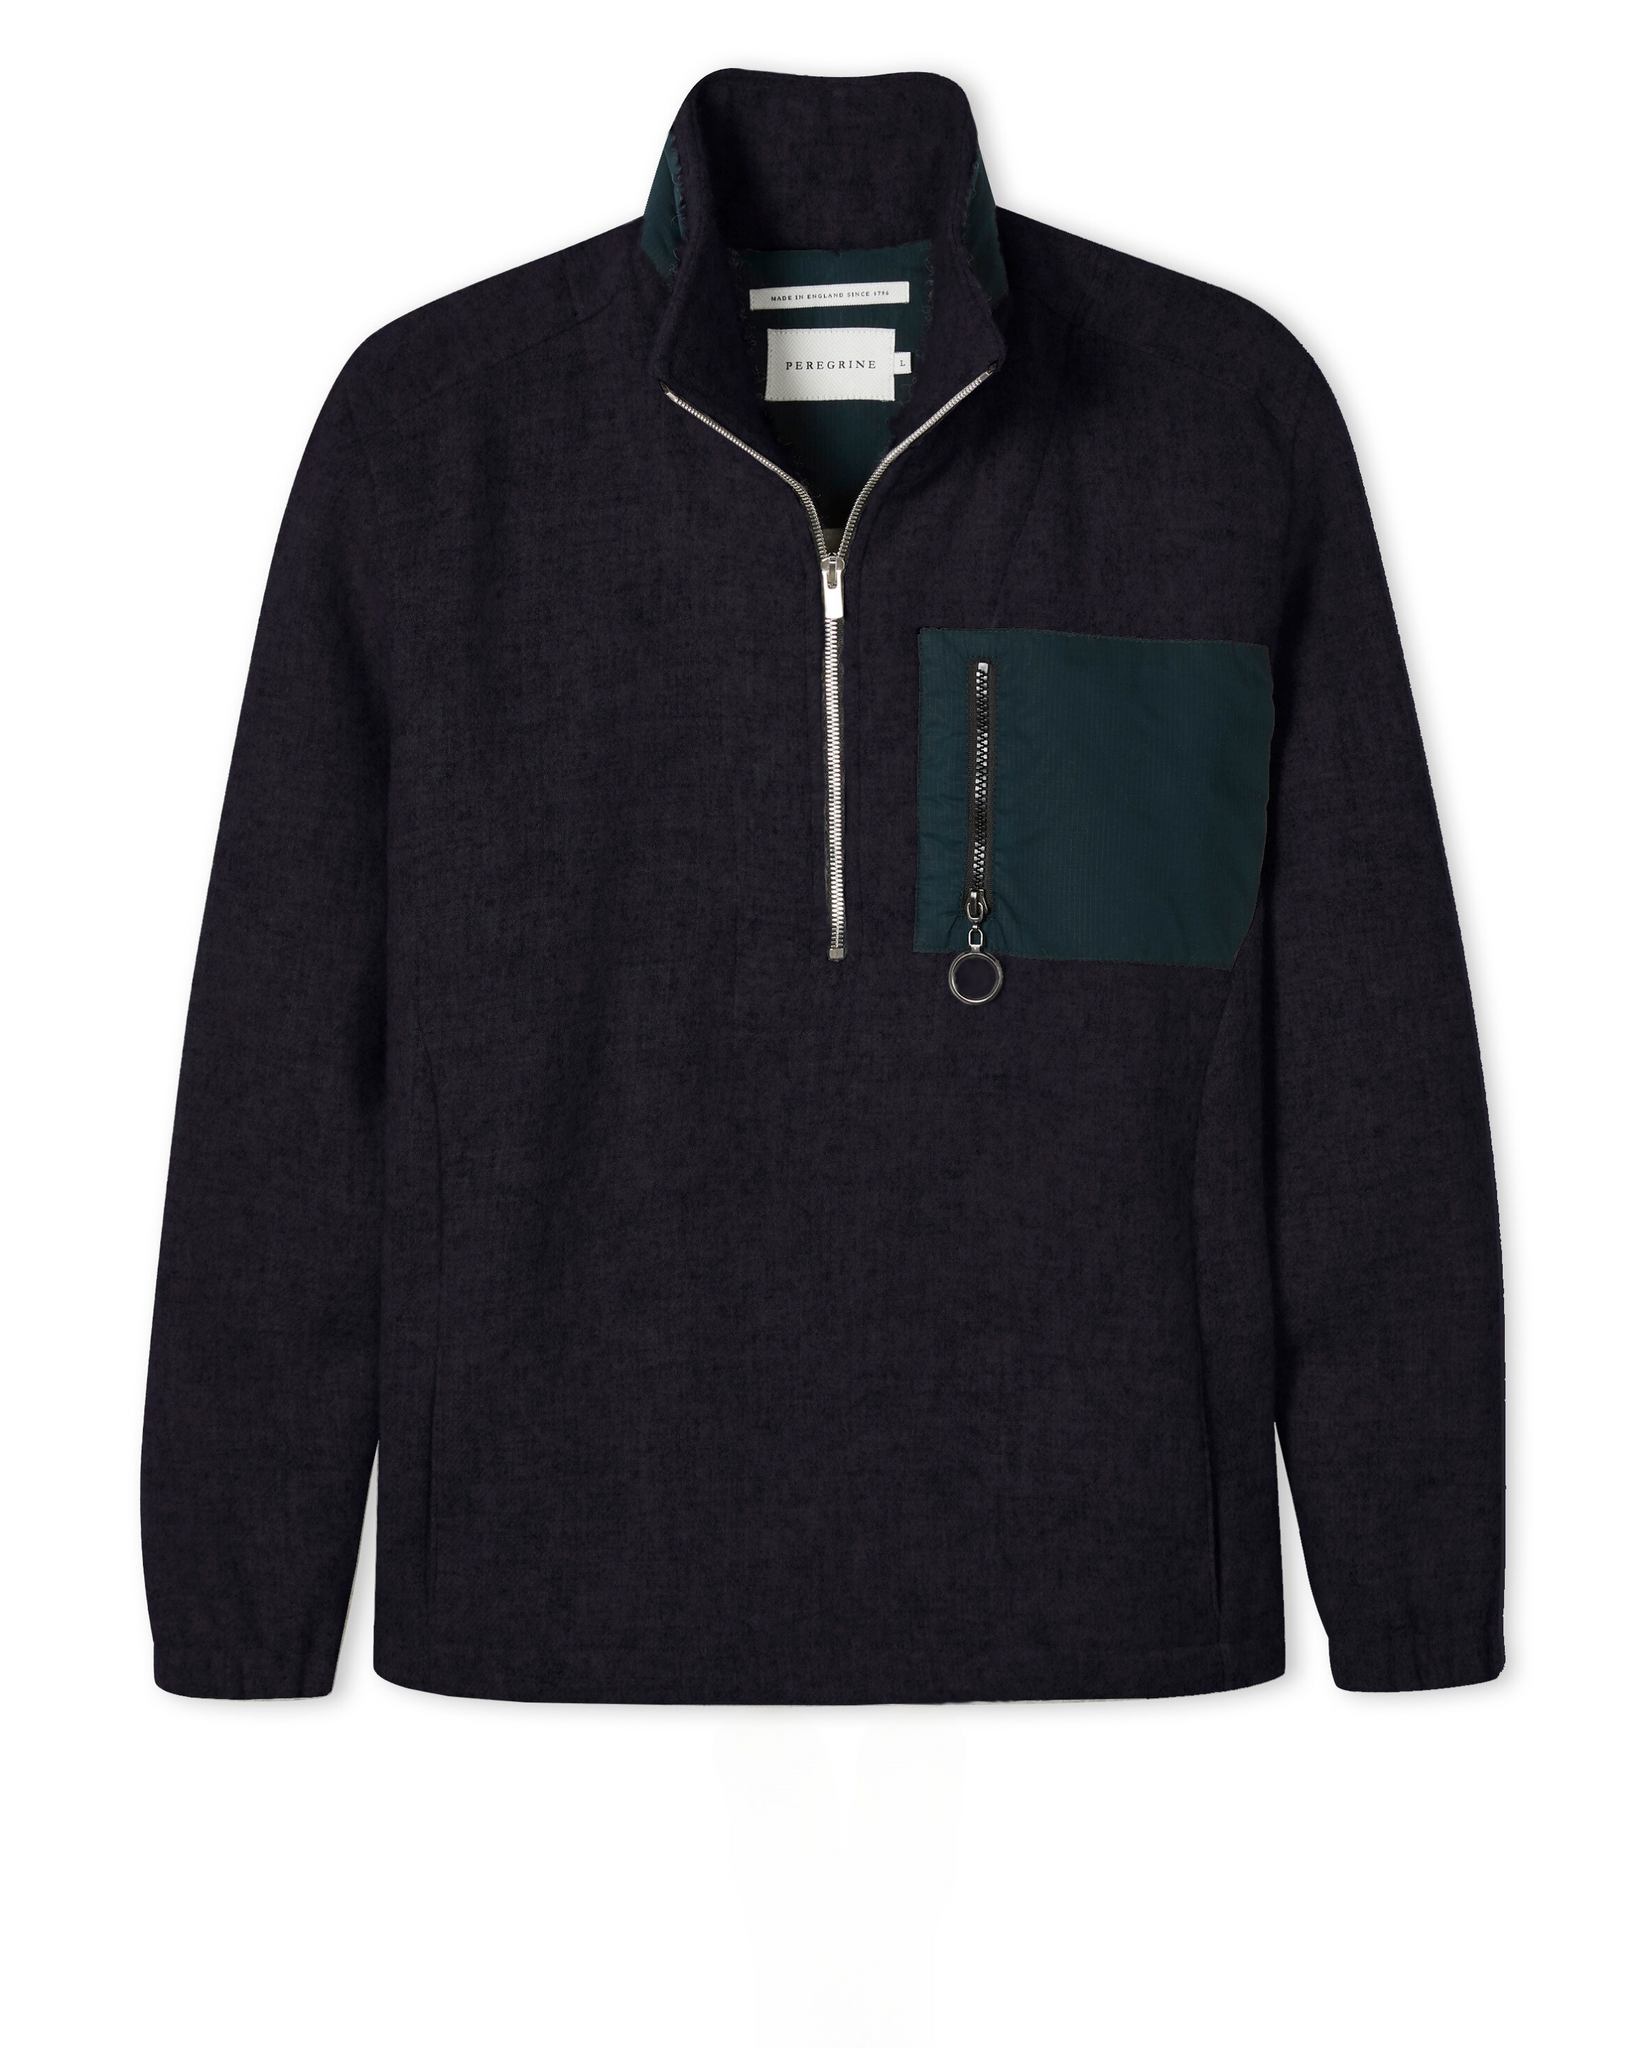 PEREGRINE - Zip Pocket Wool Fleece - Navy